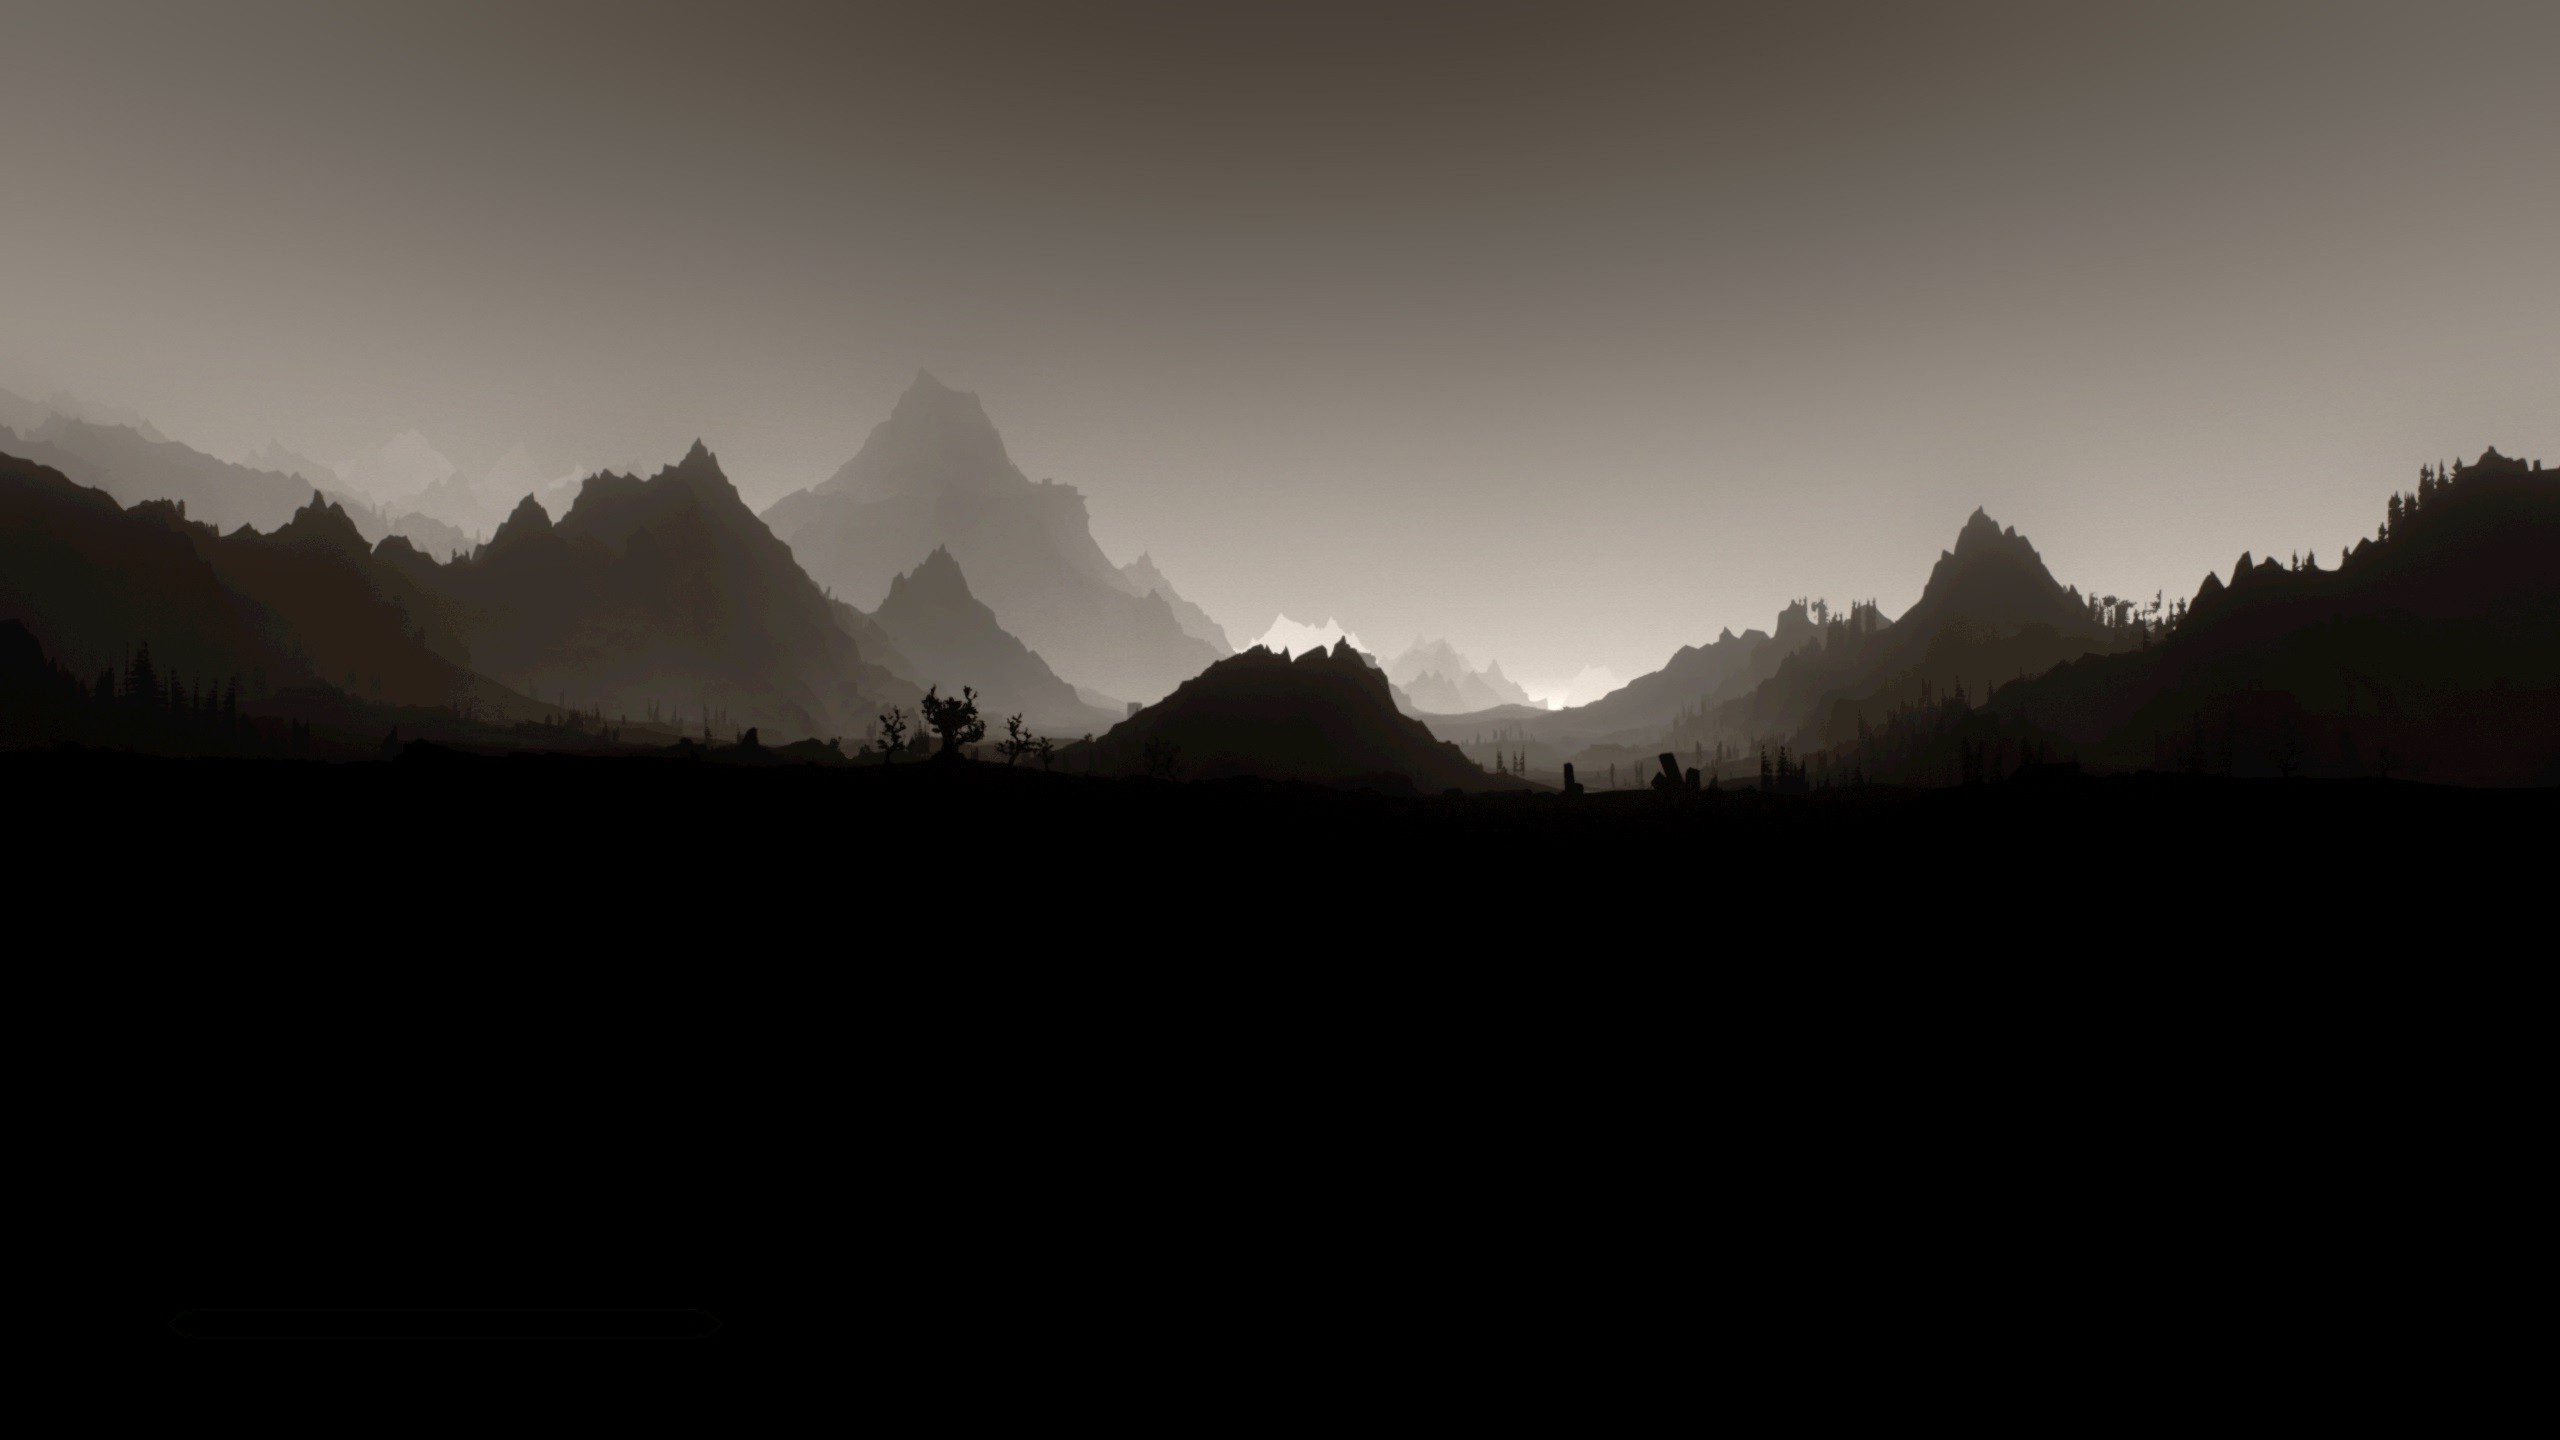 2560x1440 The Elder Scrolls V: Skyrim, Landscape, Monochrome, Minimalism Wallpapers  HD / Desktop and Mobile Backgrounds